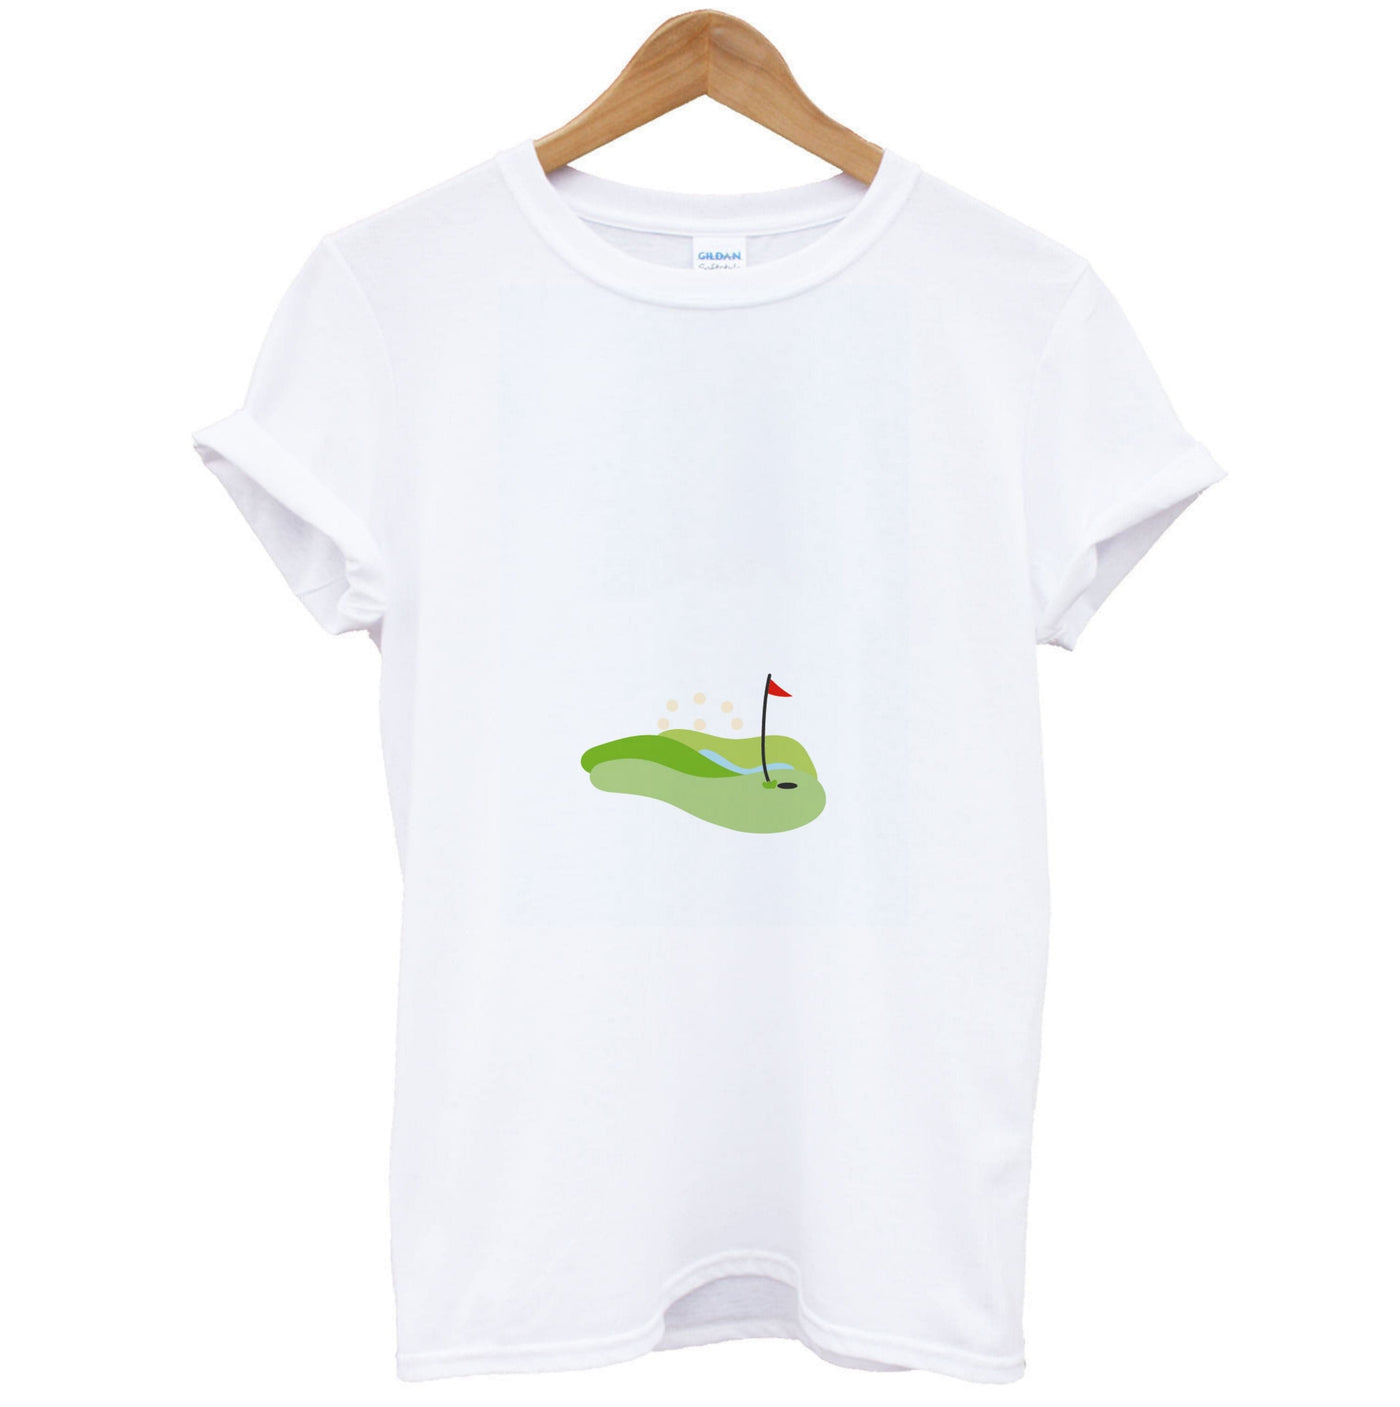 Golf course T-Shirt